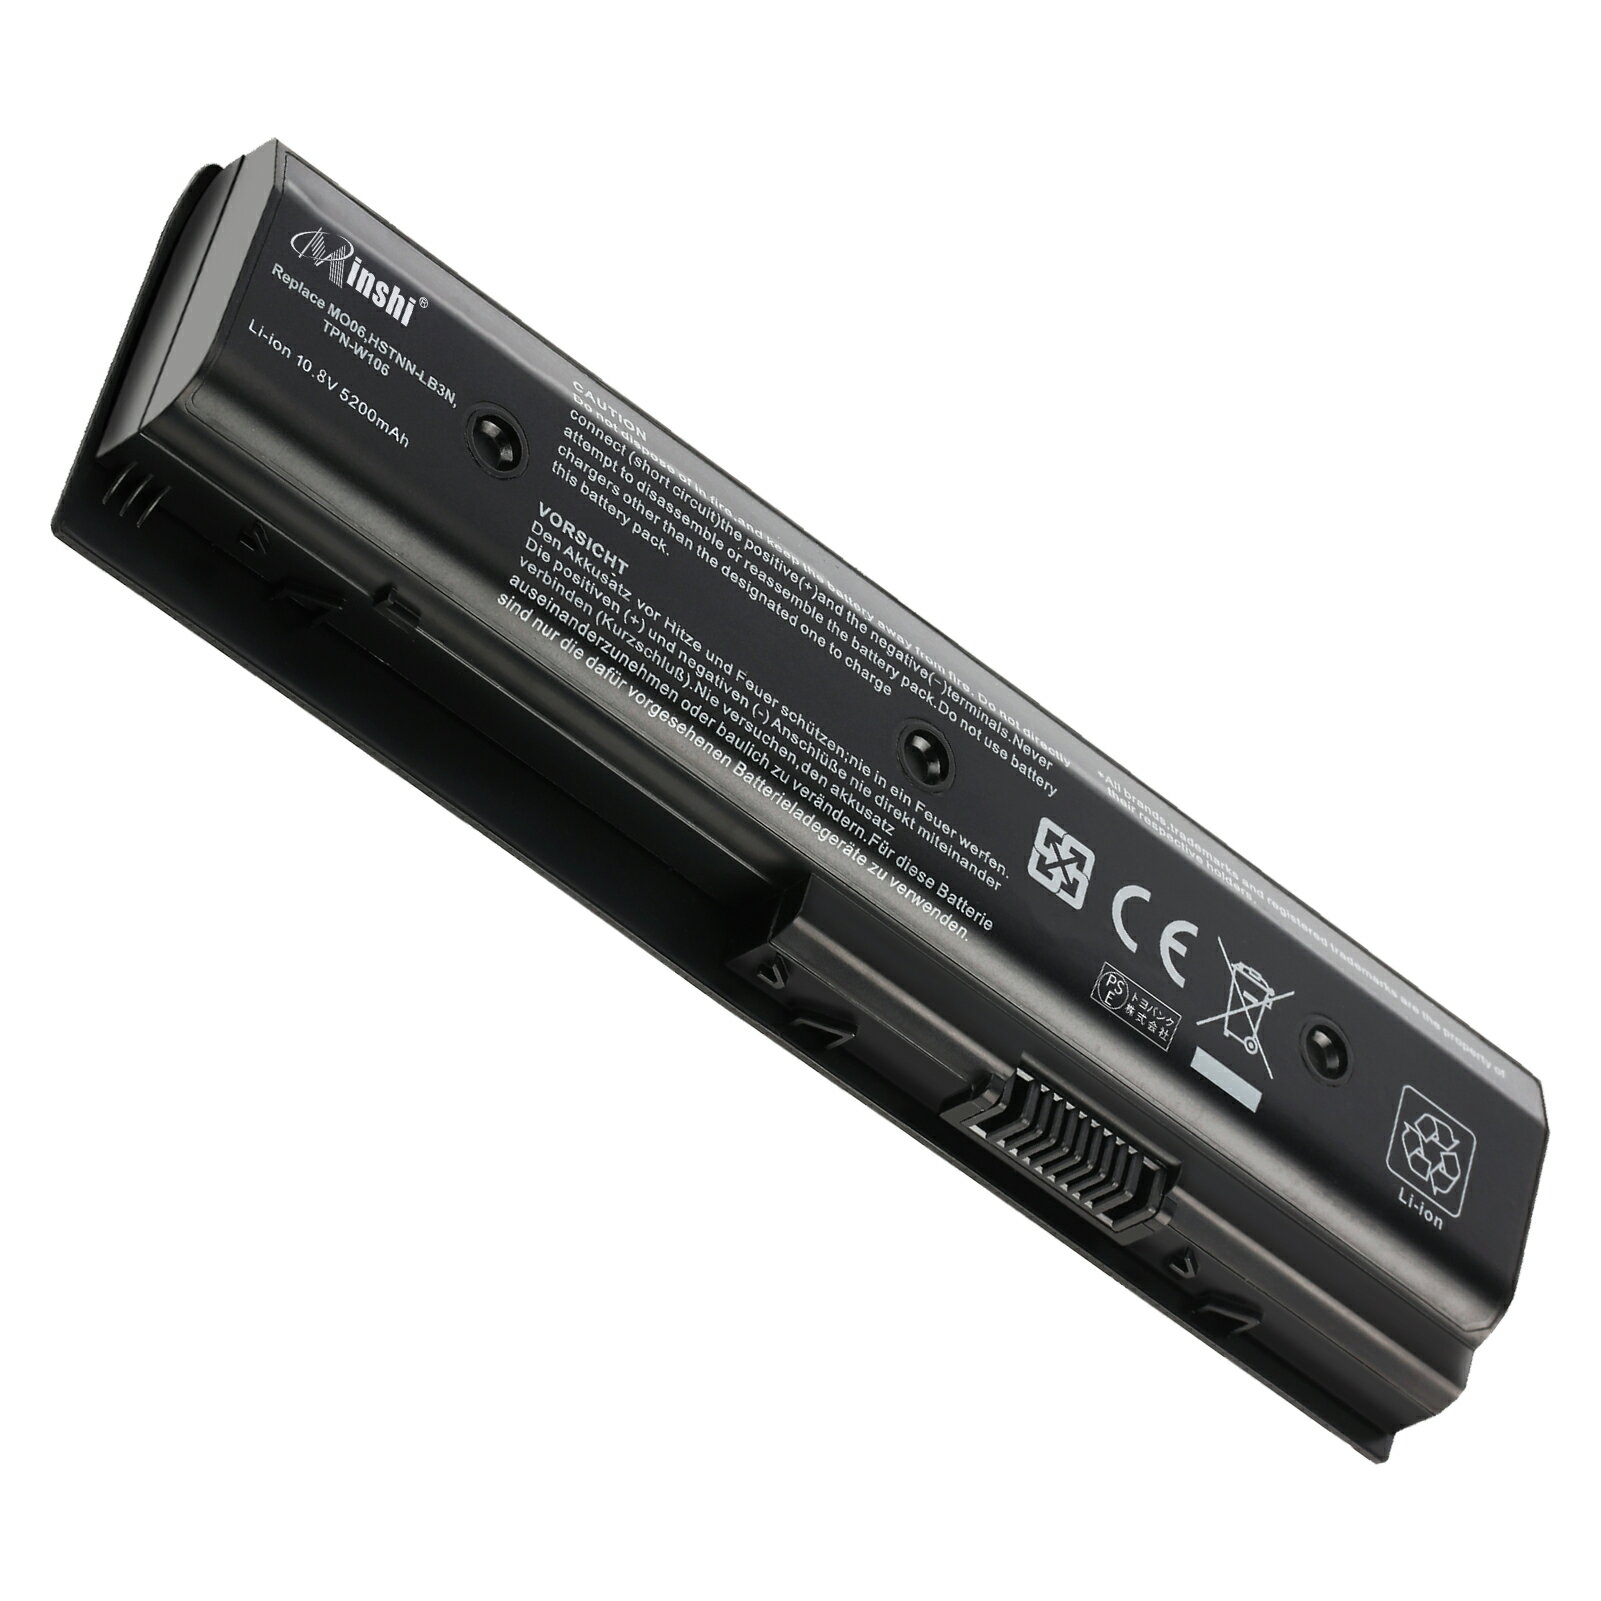 minshi 新品 HP エイチピー Envy DV7-7200 互換バッテリー 対応 高品質交換用電池パック PSE認証 1年間保証 5200mAh